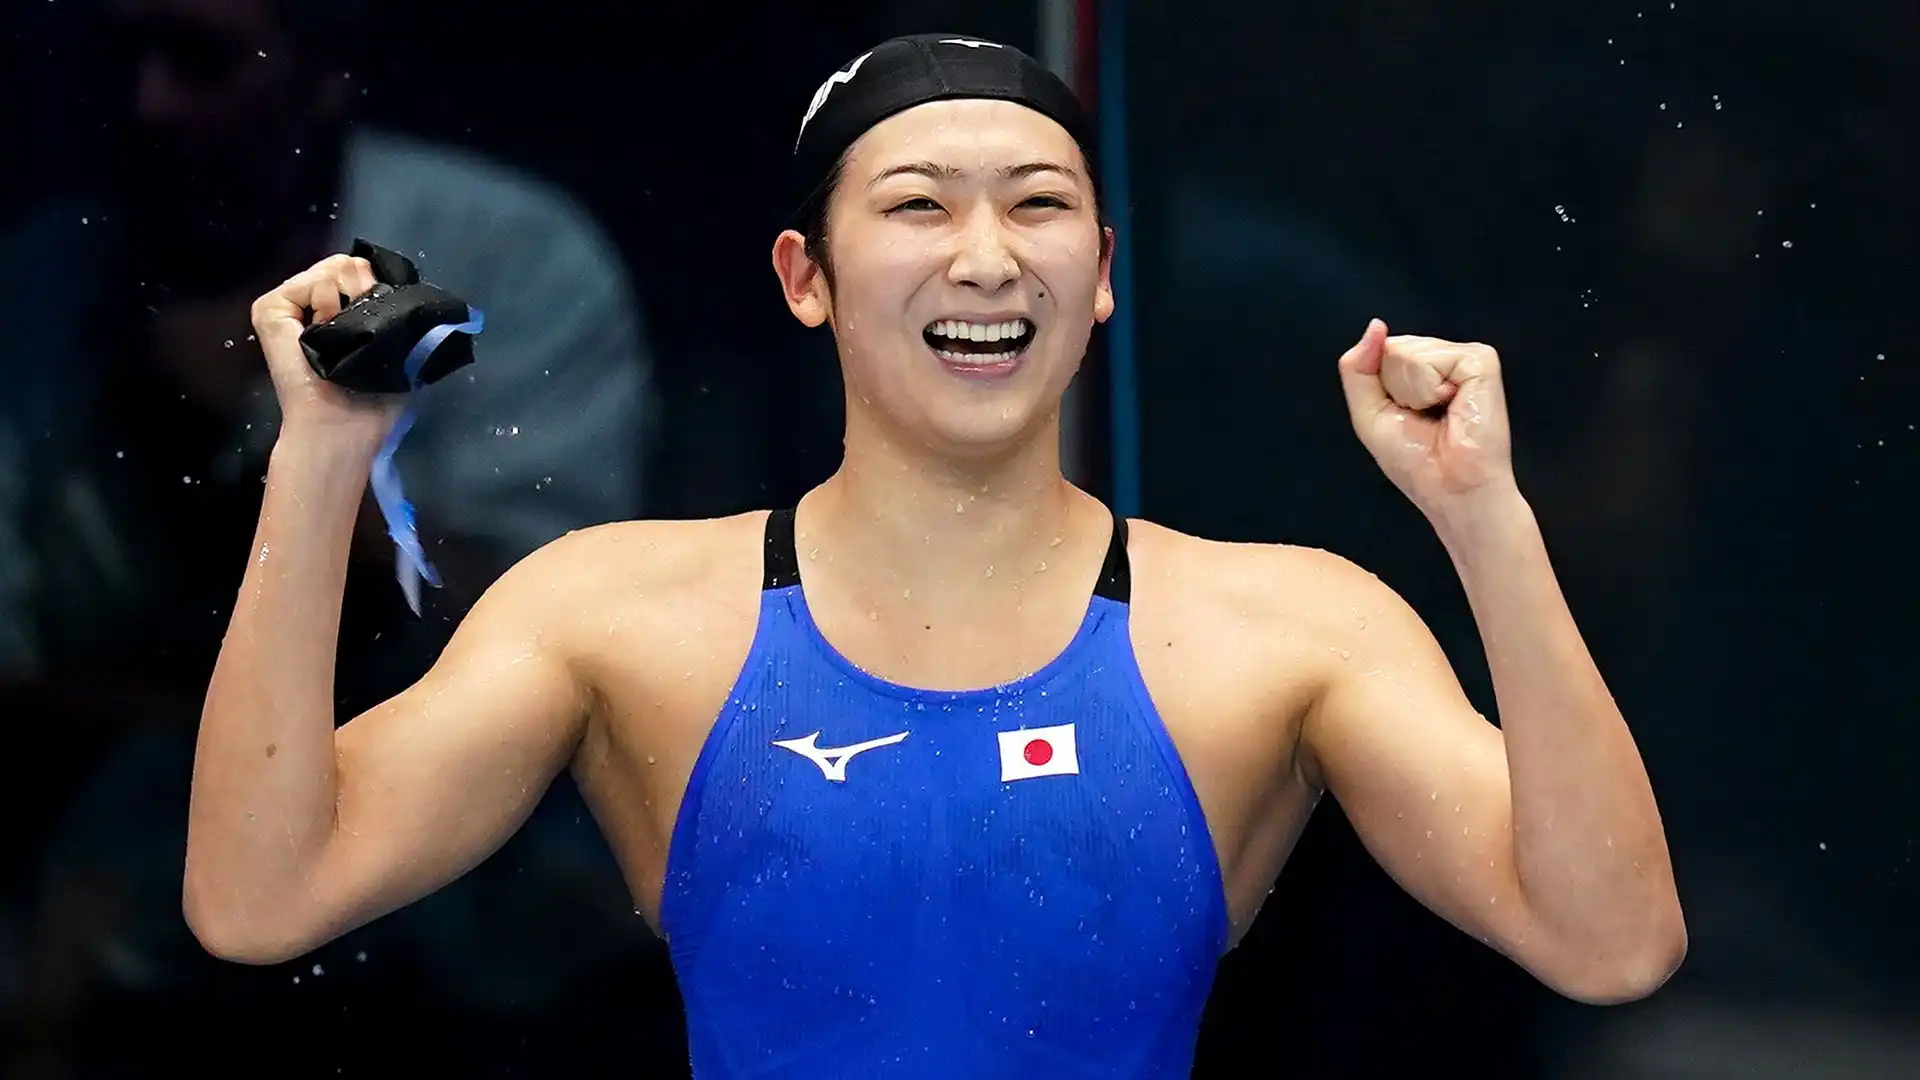 Rikako Ikee (nuotatrice)